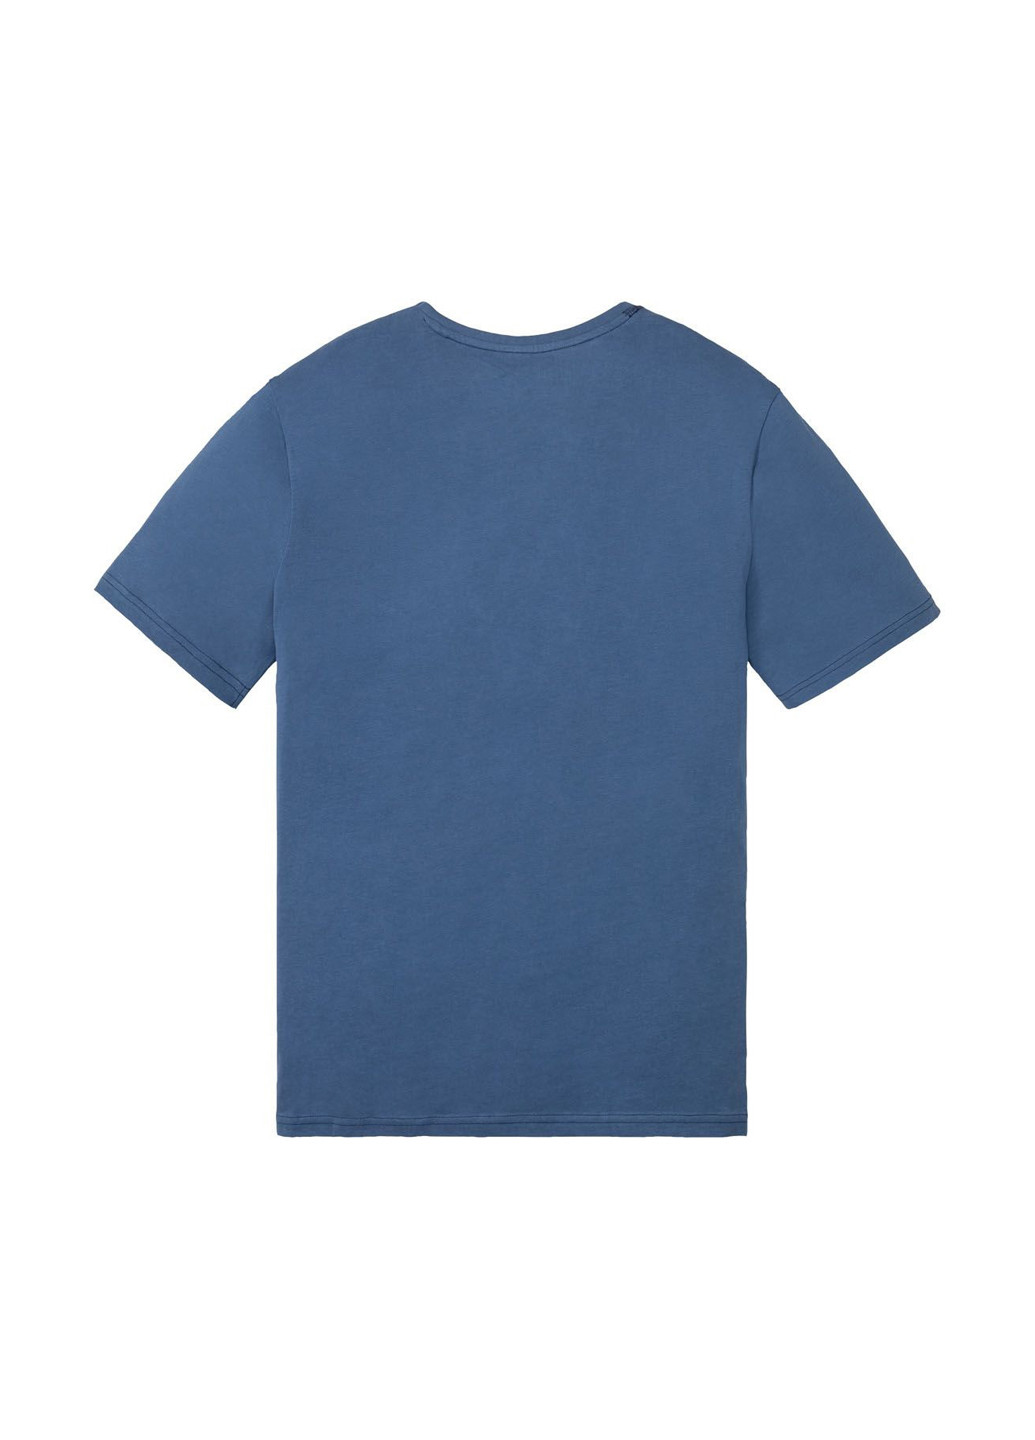 Піжама (футболка, шорти) Livergy футболка + шорти клітинка синя домашня трикотаж, бавовна